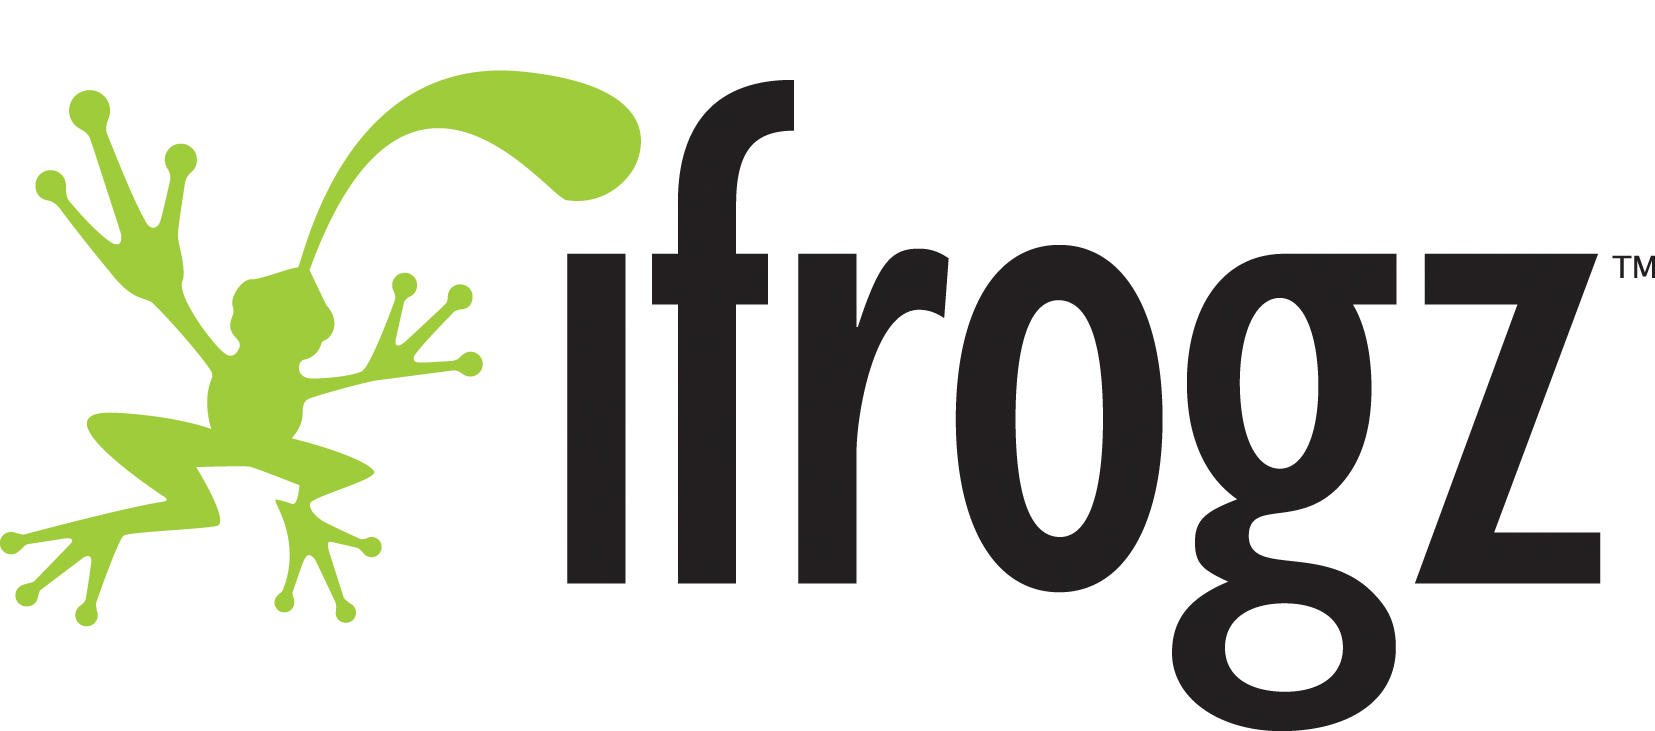 Ifrogz Logo photo - 1